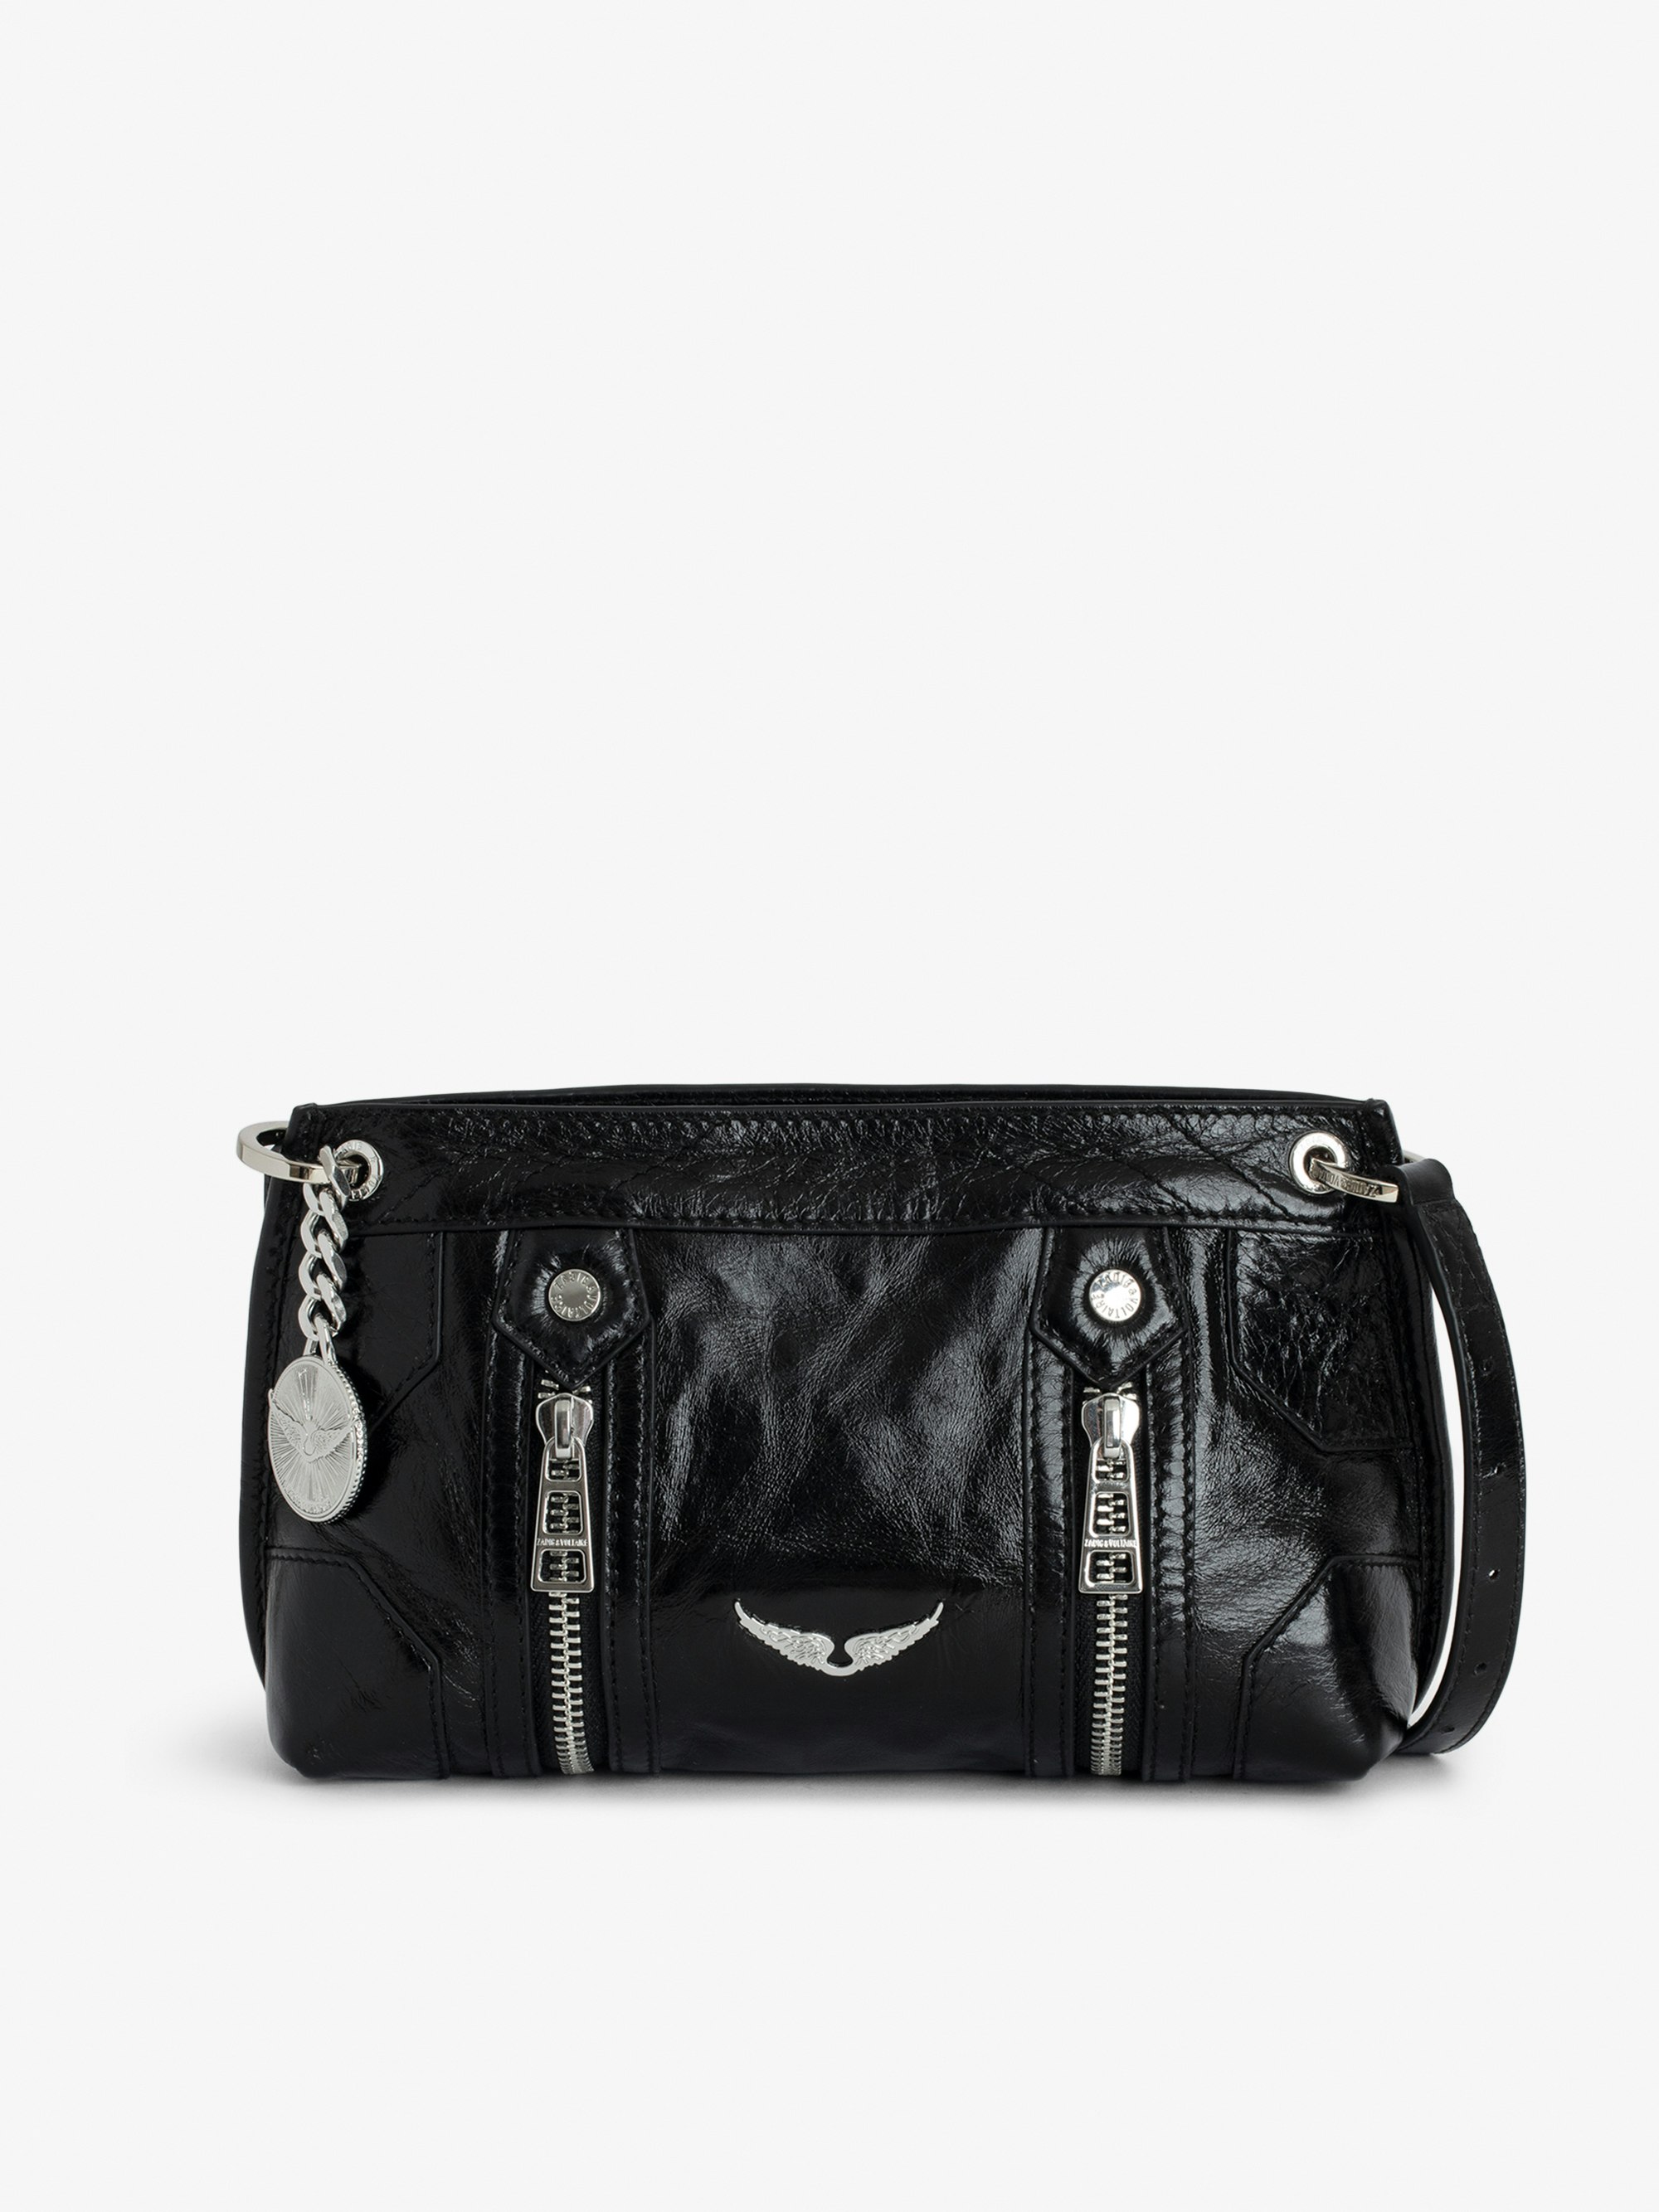 Tasche Sunny Mood - Handtasche aus schwarzem Lackleder in Vintage-Optik mit Medaillon-Charm und Signature-Flügeln.